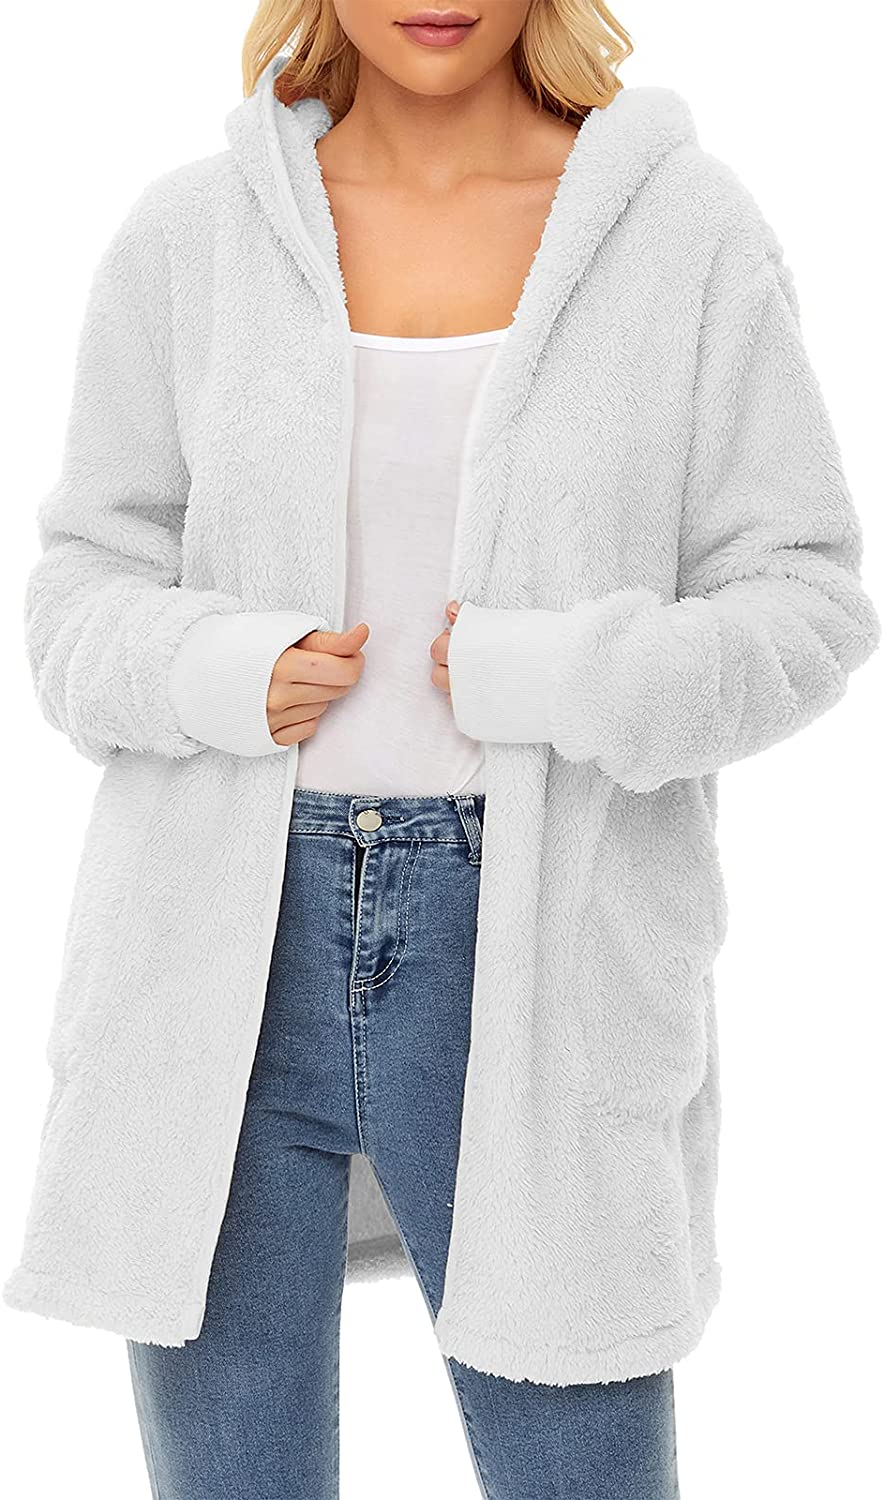 Womens Fleece Jacket Lightweight Long Cardigan Sweaters Oversized